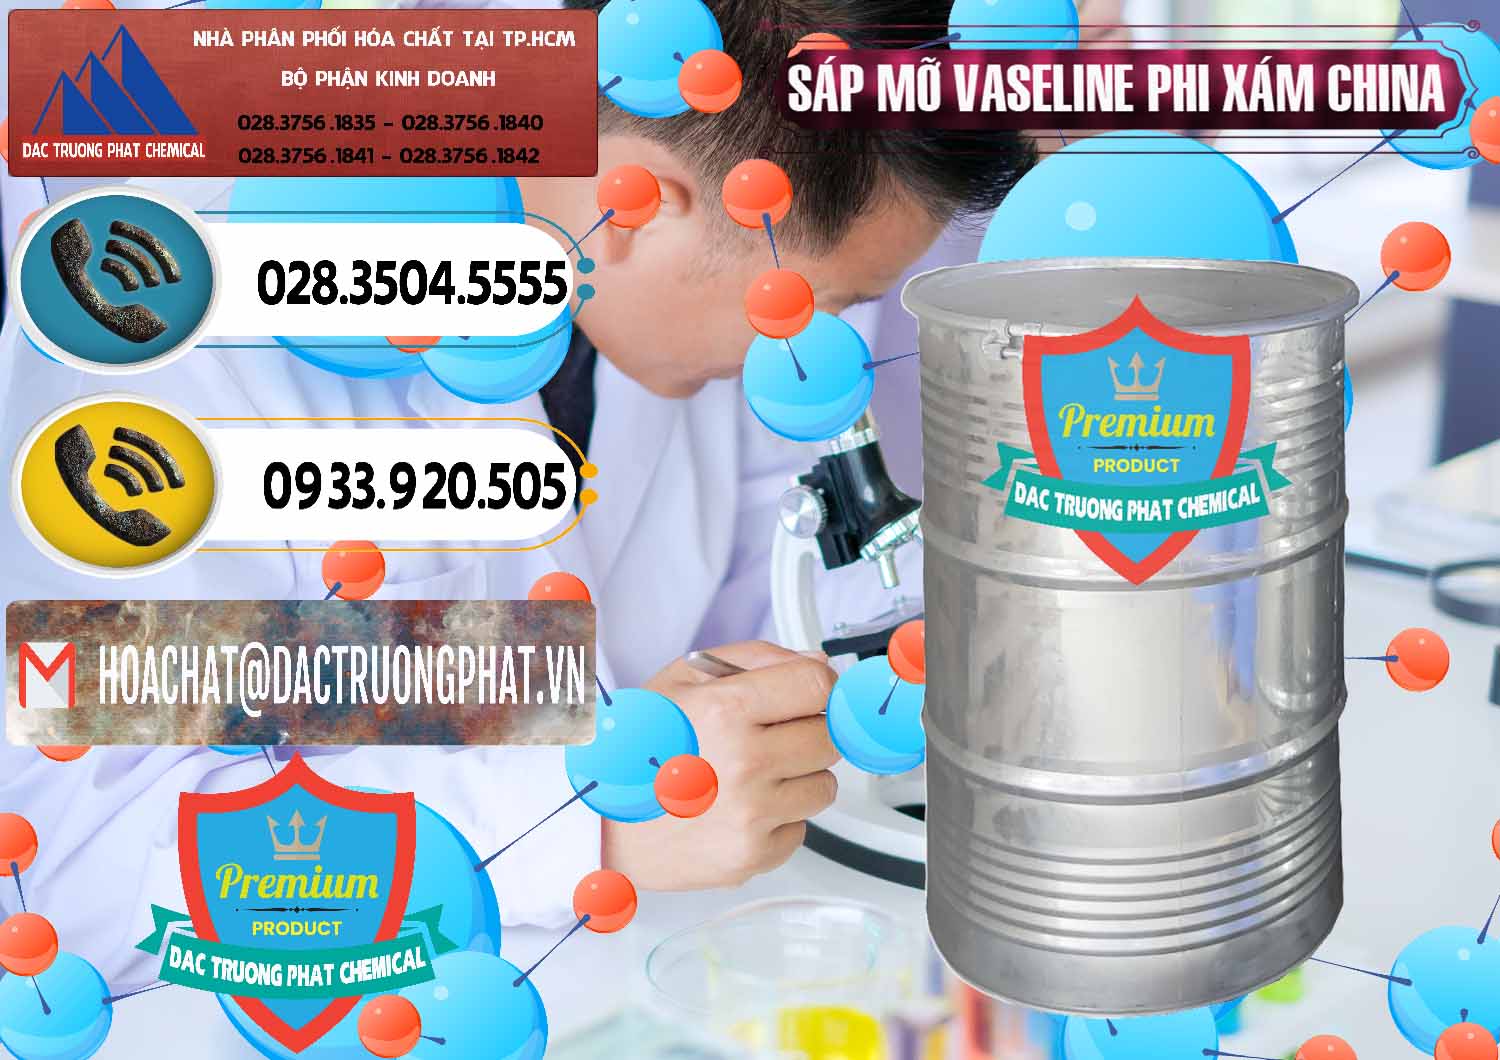 Công ty chuyên bán ( cung ứng ) Sáp Mỡ Vaseline Phi Xám Trung Quốc China - 0291 - Đơn vị cung cấp _ phân phối hóa chất tại TP.HCM - hoachatdetnhuom.vn